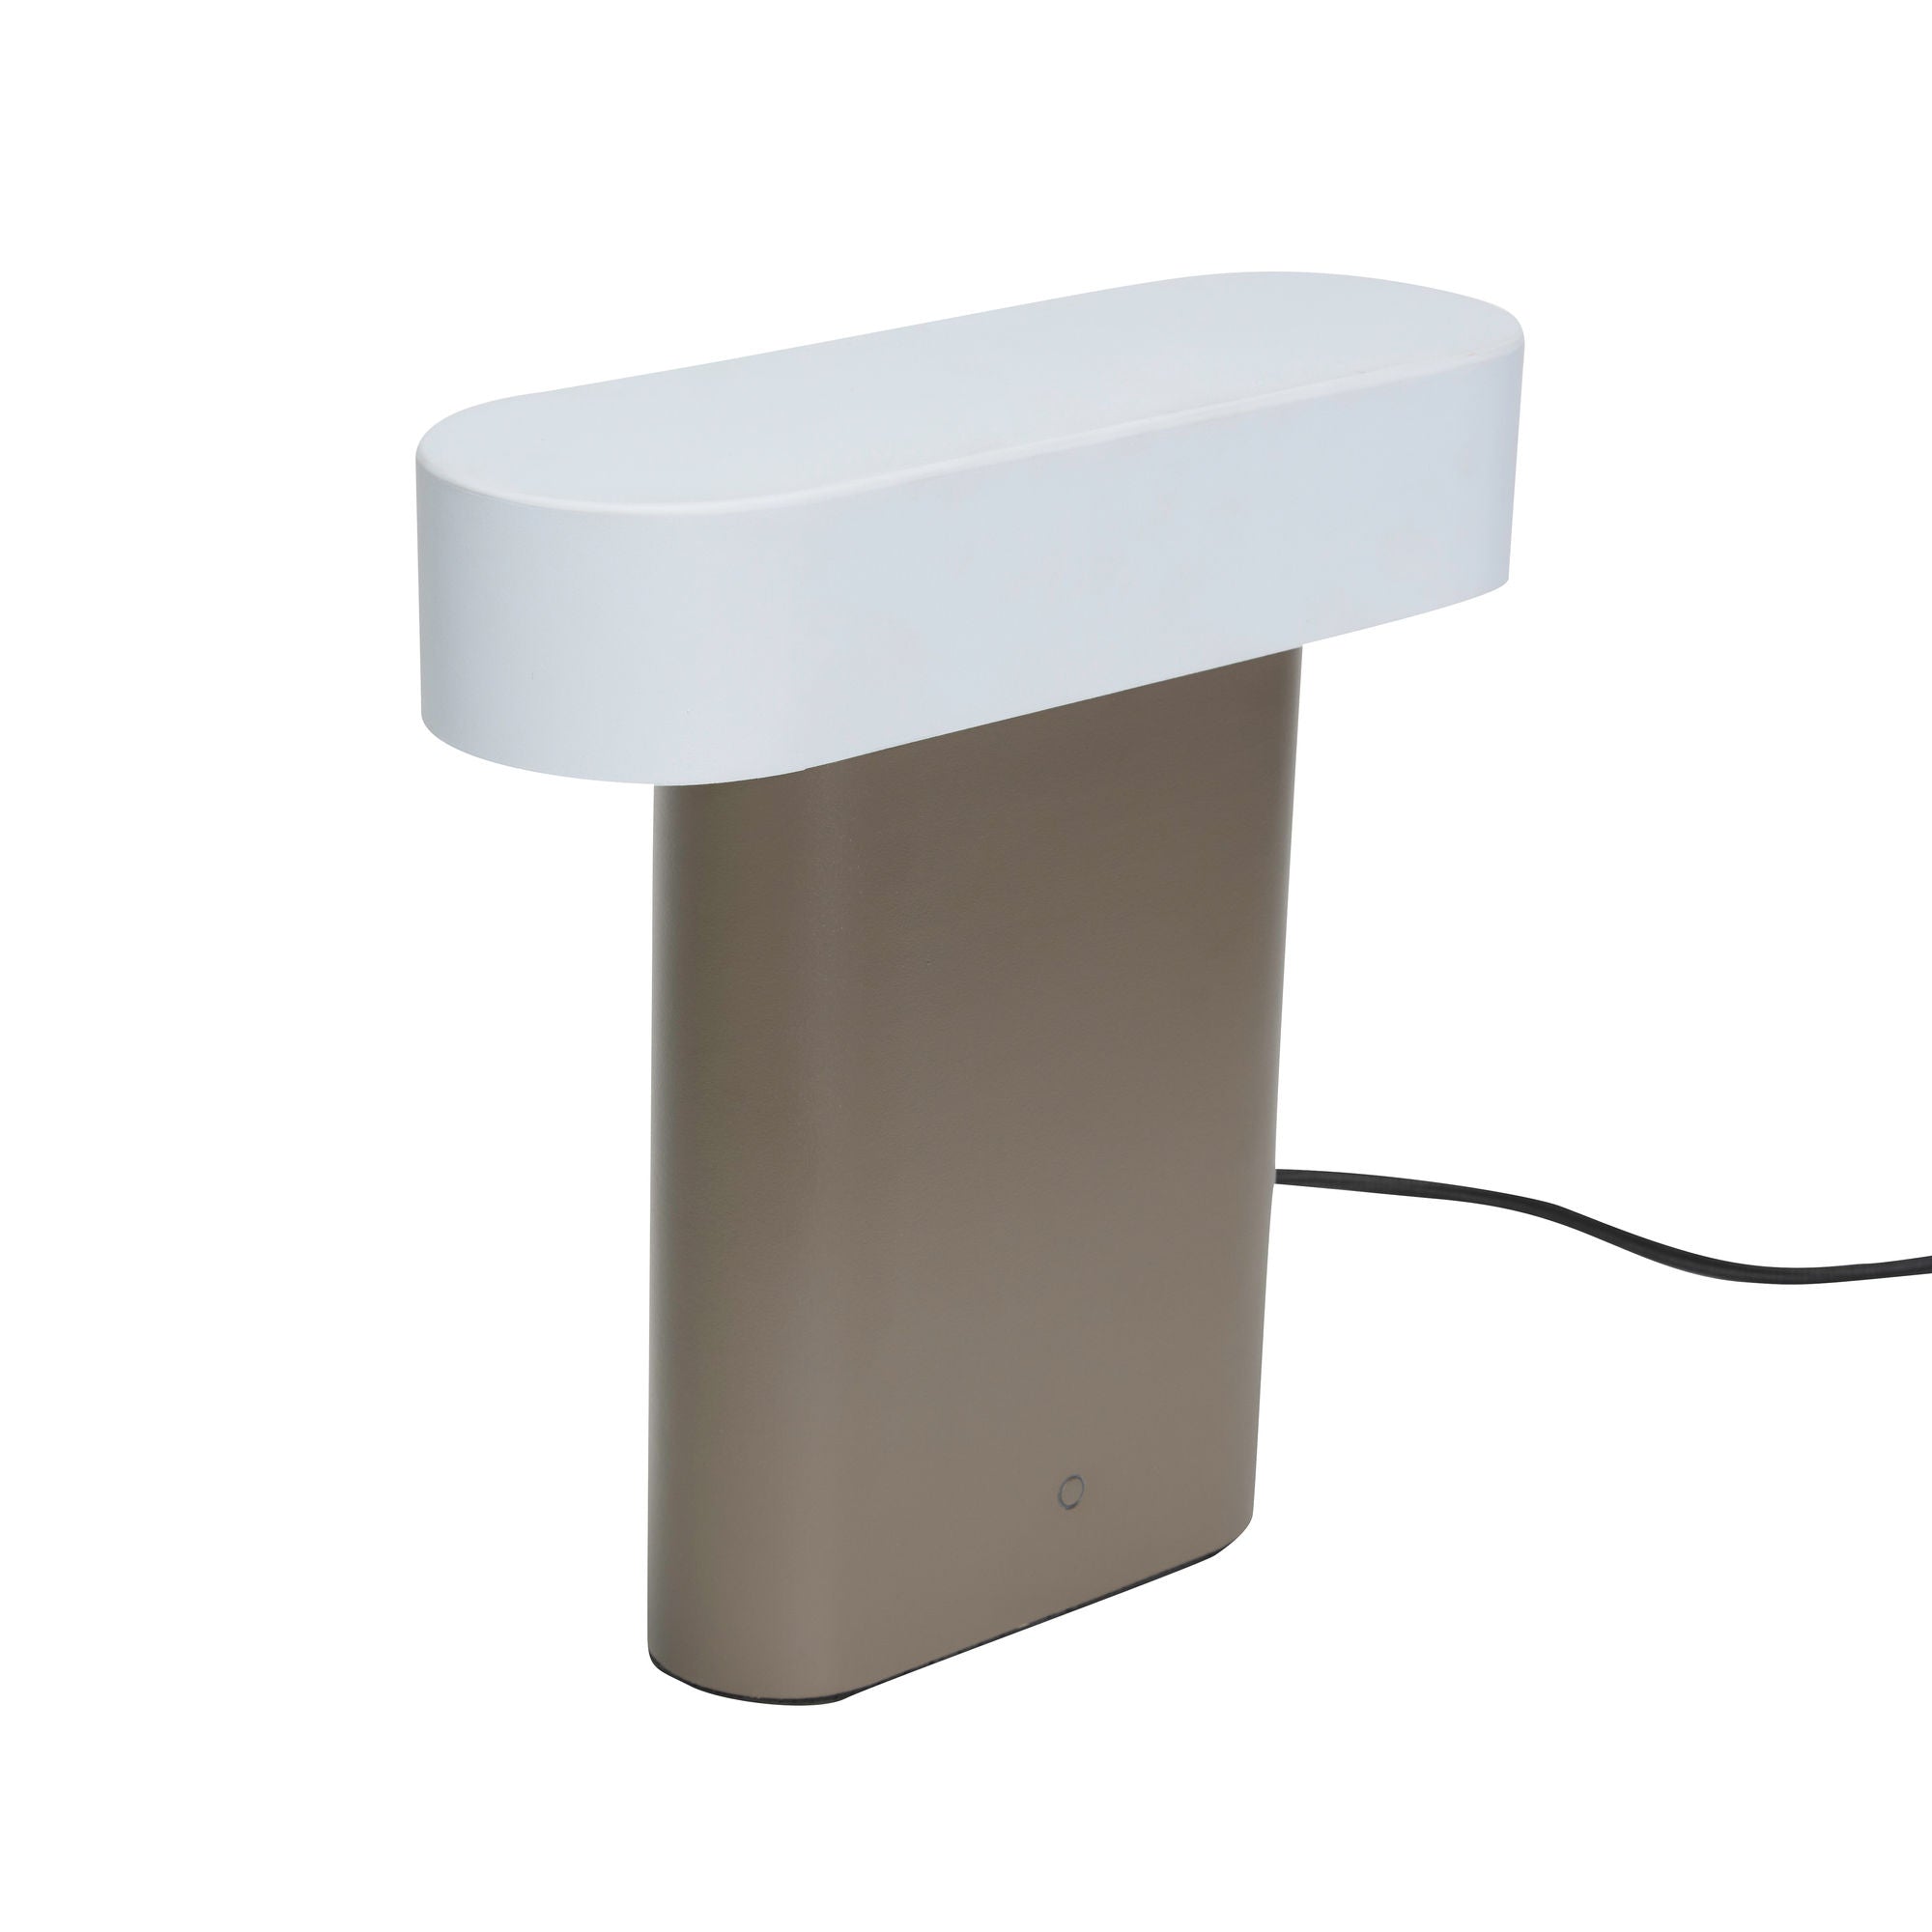 Hübsch slank bordlampe brun/lys grå